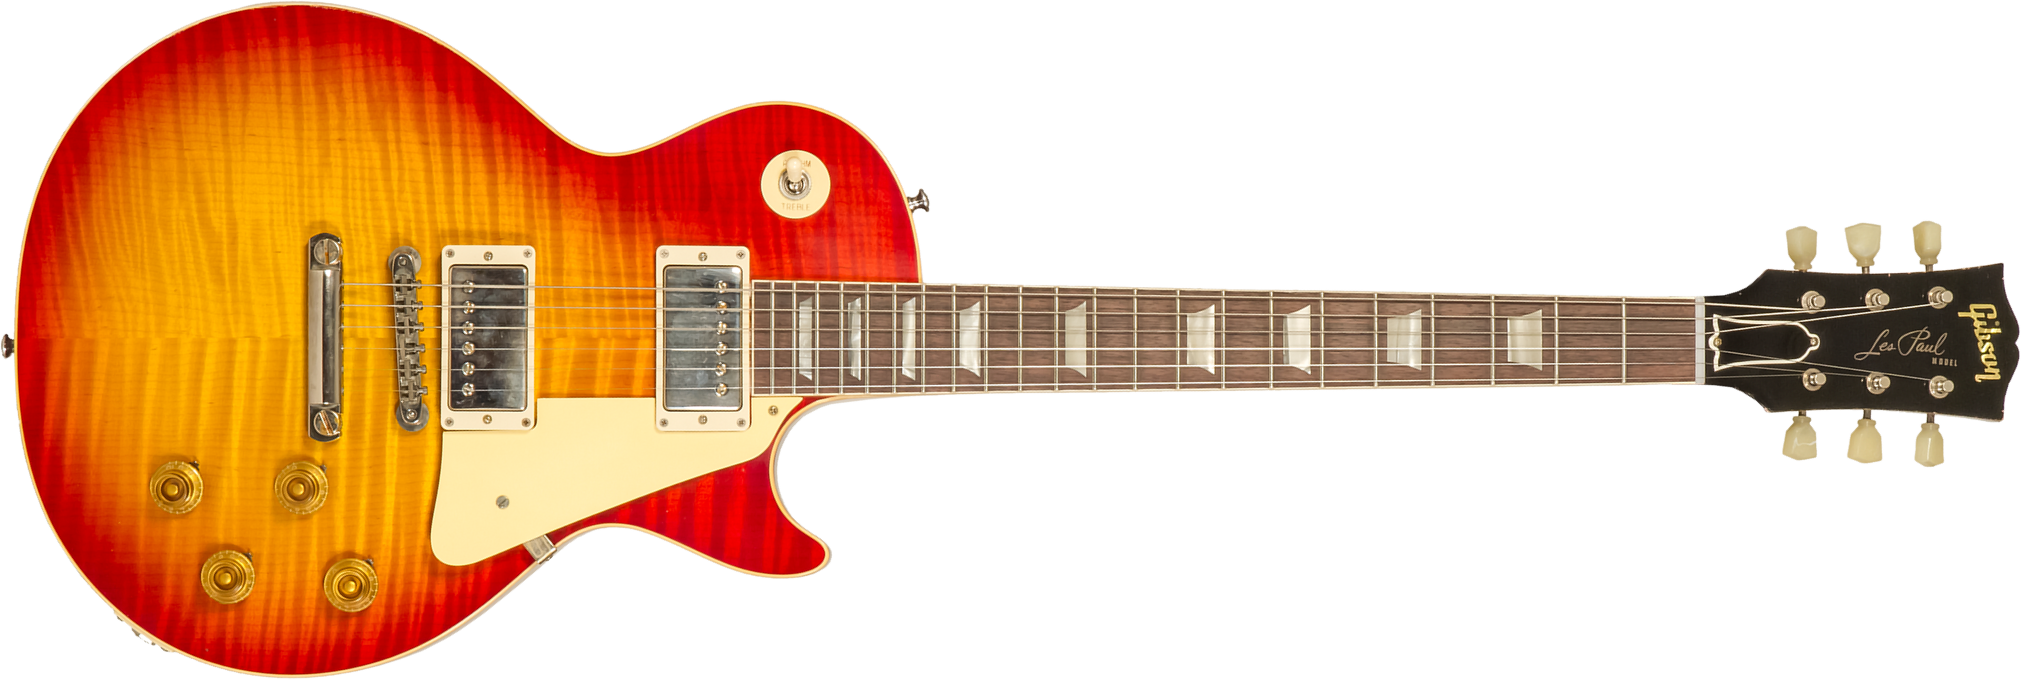 Gibson Custom Shop M2m Les Paul Standard 1959 Reissue 2h Ht Rw #94389 - Murphy Lab Light Aged Washed Cherry Sunburst - Enkel gesneden elektrische gita